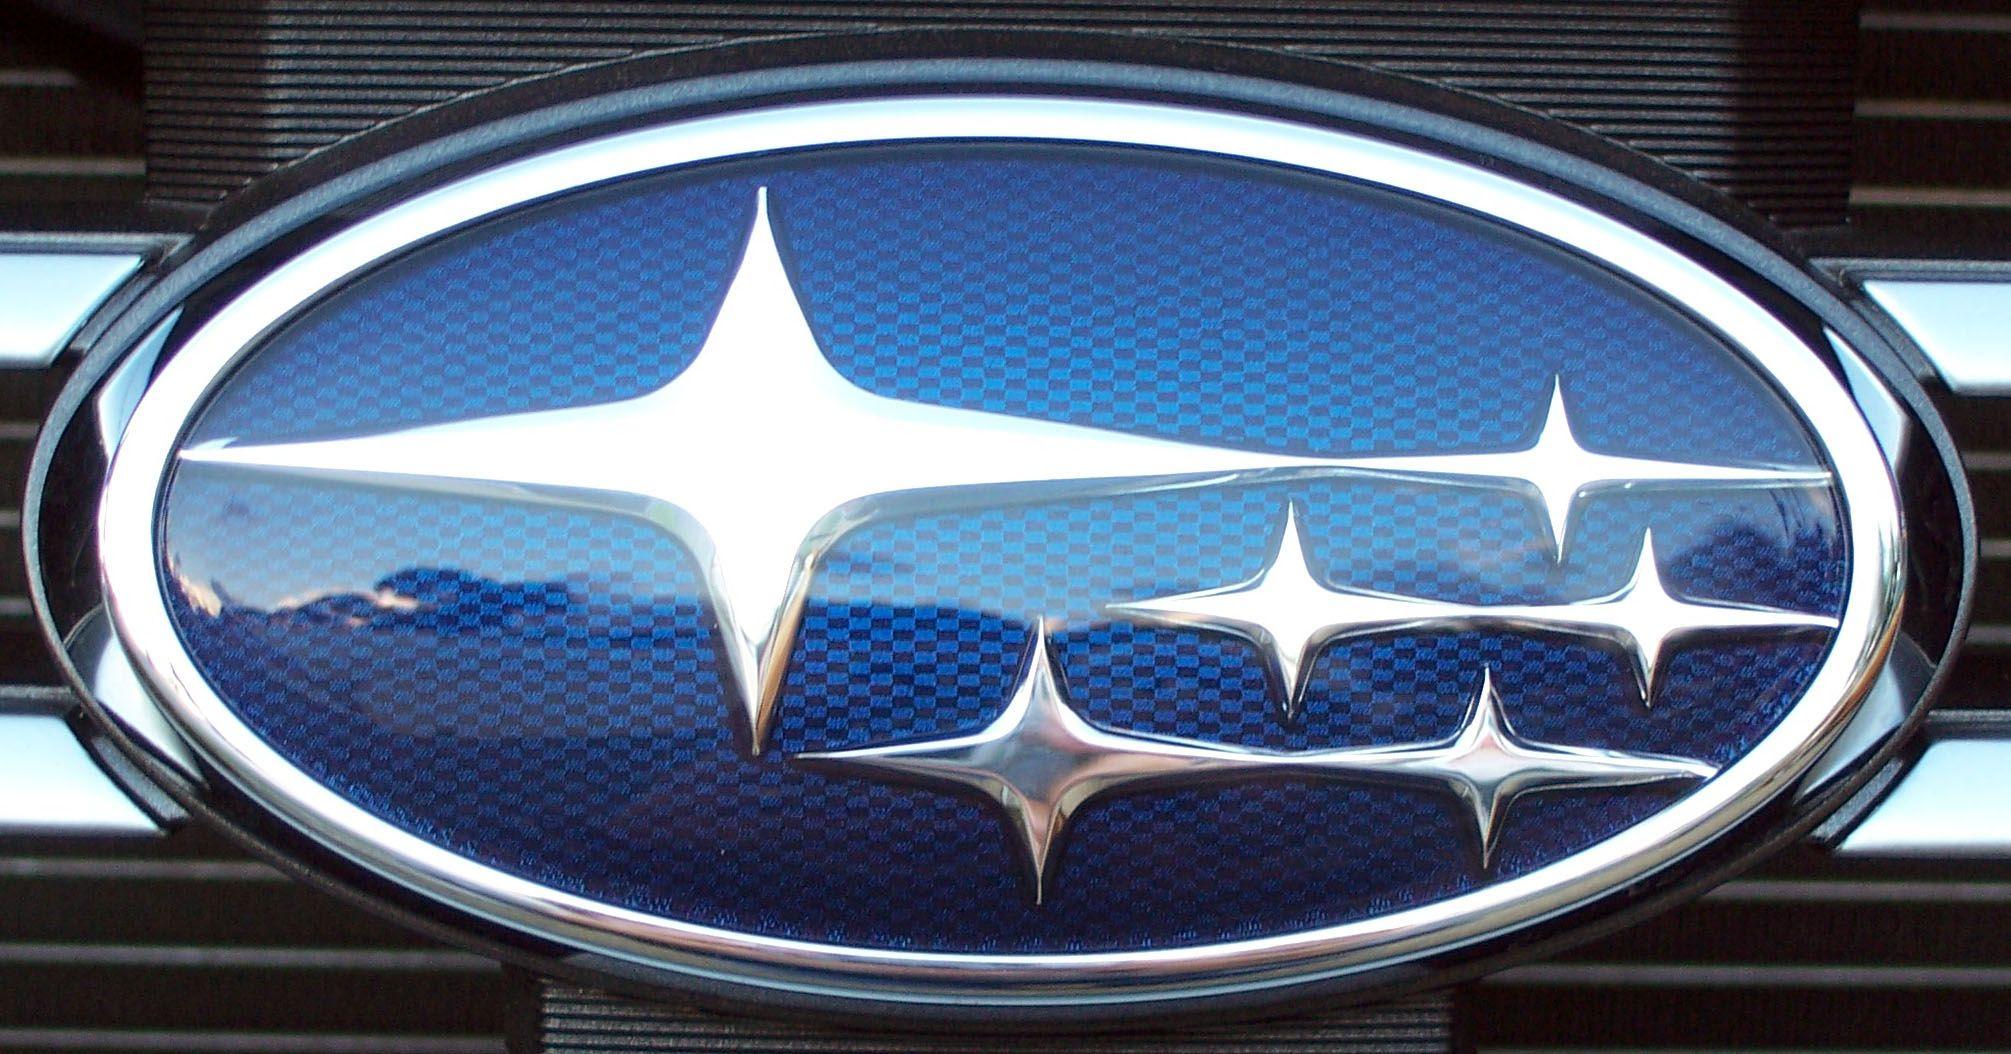 Blue Car Logo - Subaru Logo, Subaru Car Symbol Meaning and History | Car Brand Names.com